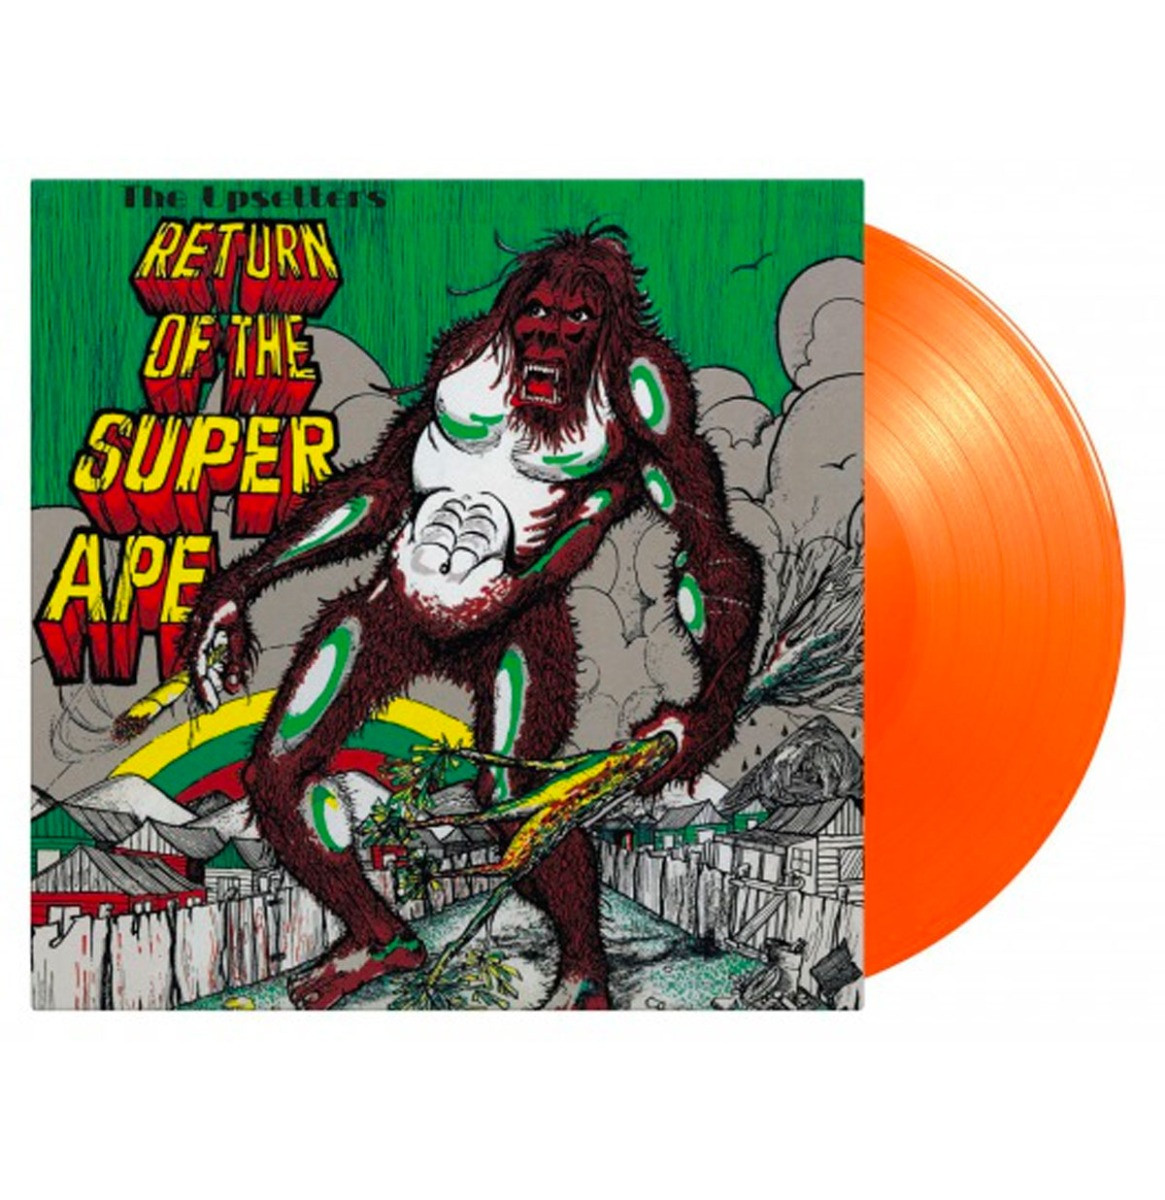 The Upsetters - Return Of The Super Ape (Gekleurd Vinyl) LP